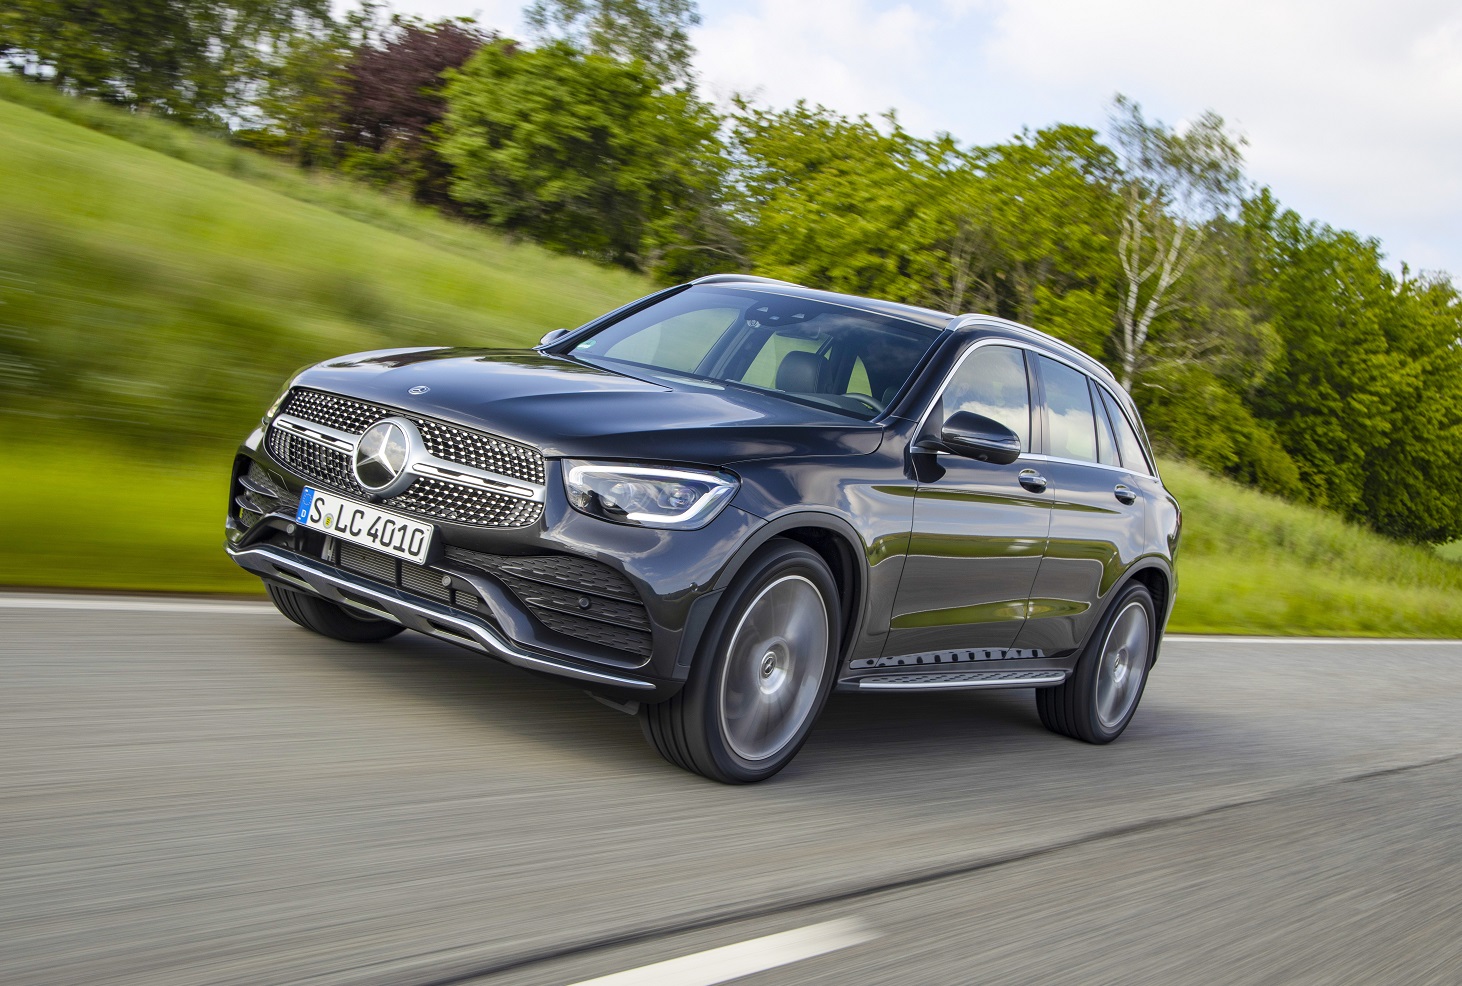 Mercedes GLC hybride rechargeable : prix, autonomie, infos